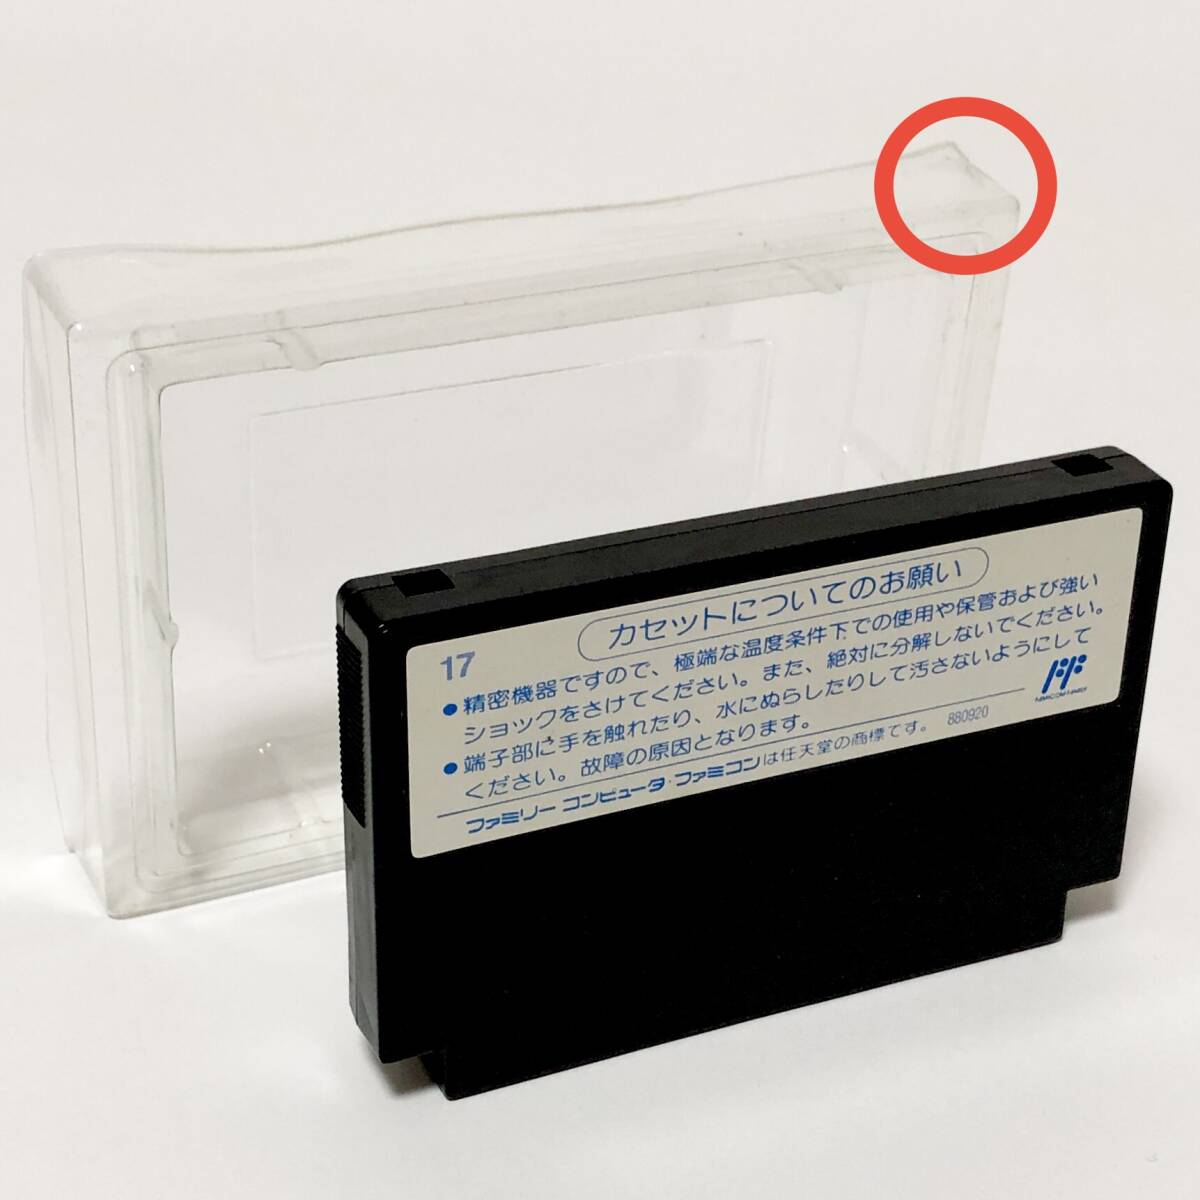 ファミコン モアイくん 箱説付き 痛み大 動作確認済み コナミ パズルゲーム Nintendo Famicom Moai-Kun CIB Tested Konami_画像8